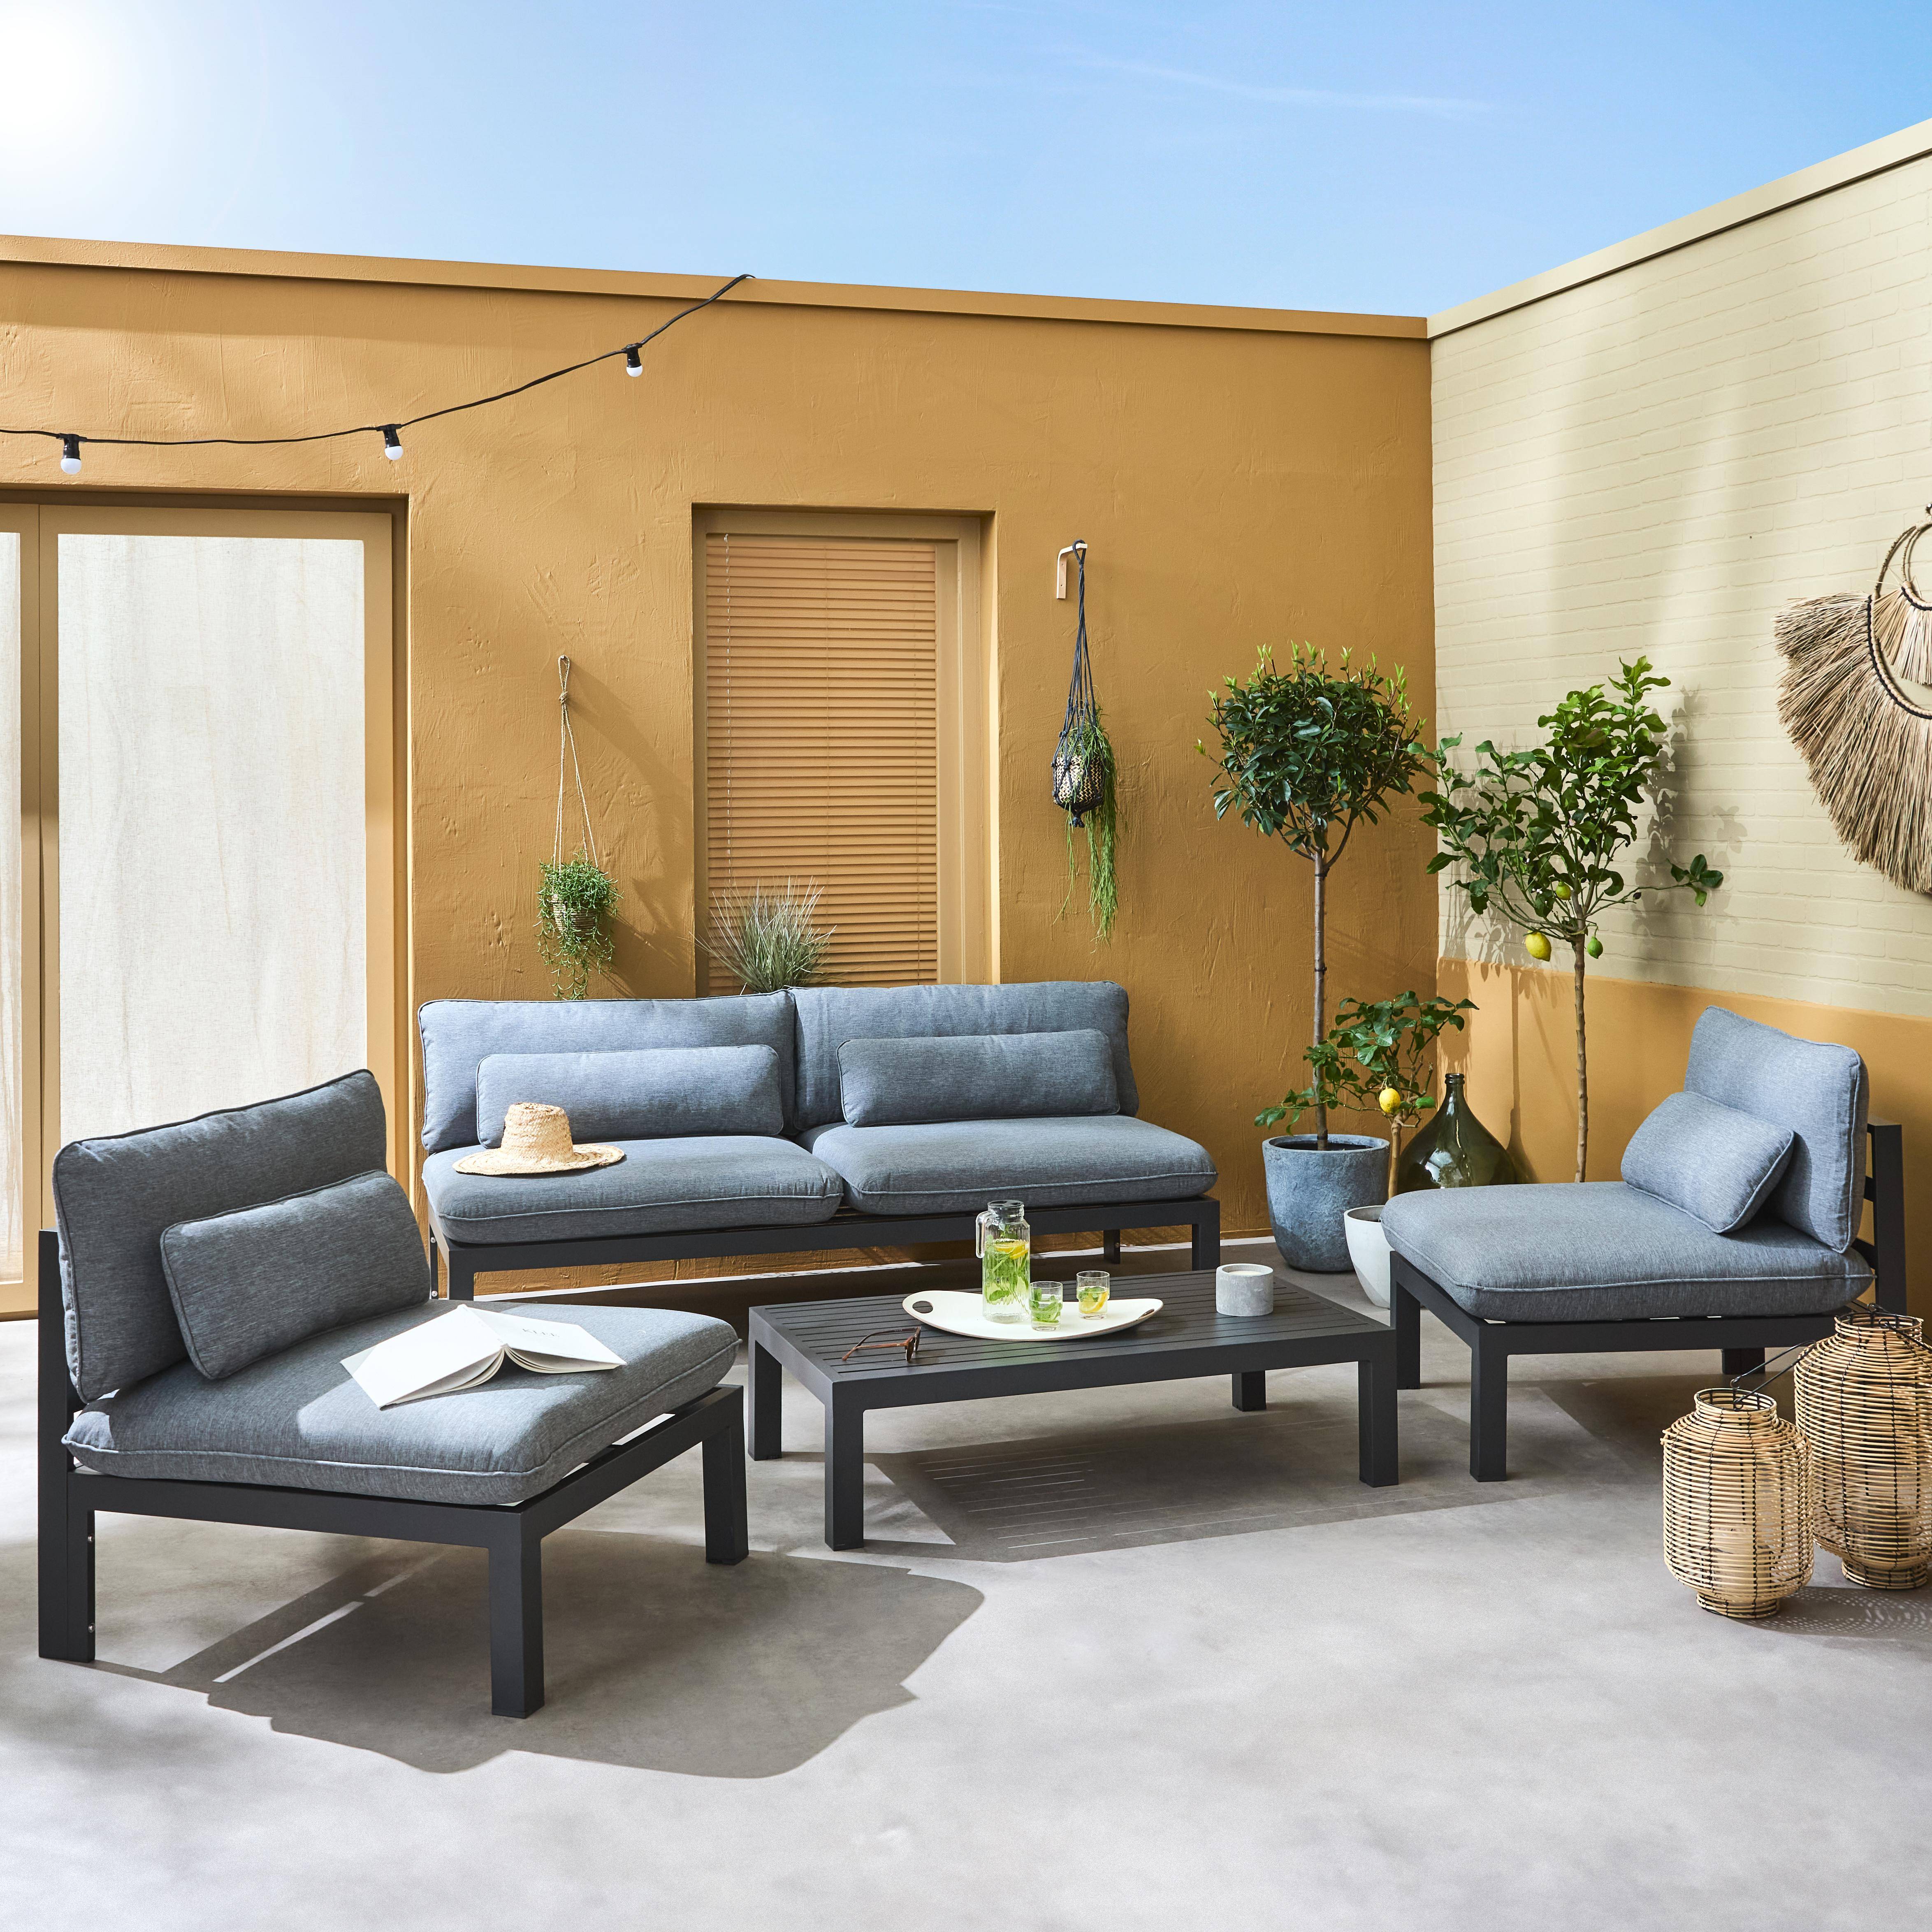 Conjunto de muebles de jardín de aluminio 4 plazas - asientos profundos - Rieti - gris antracita,sweeek,Photo1